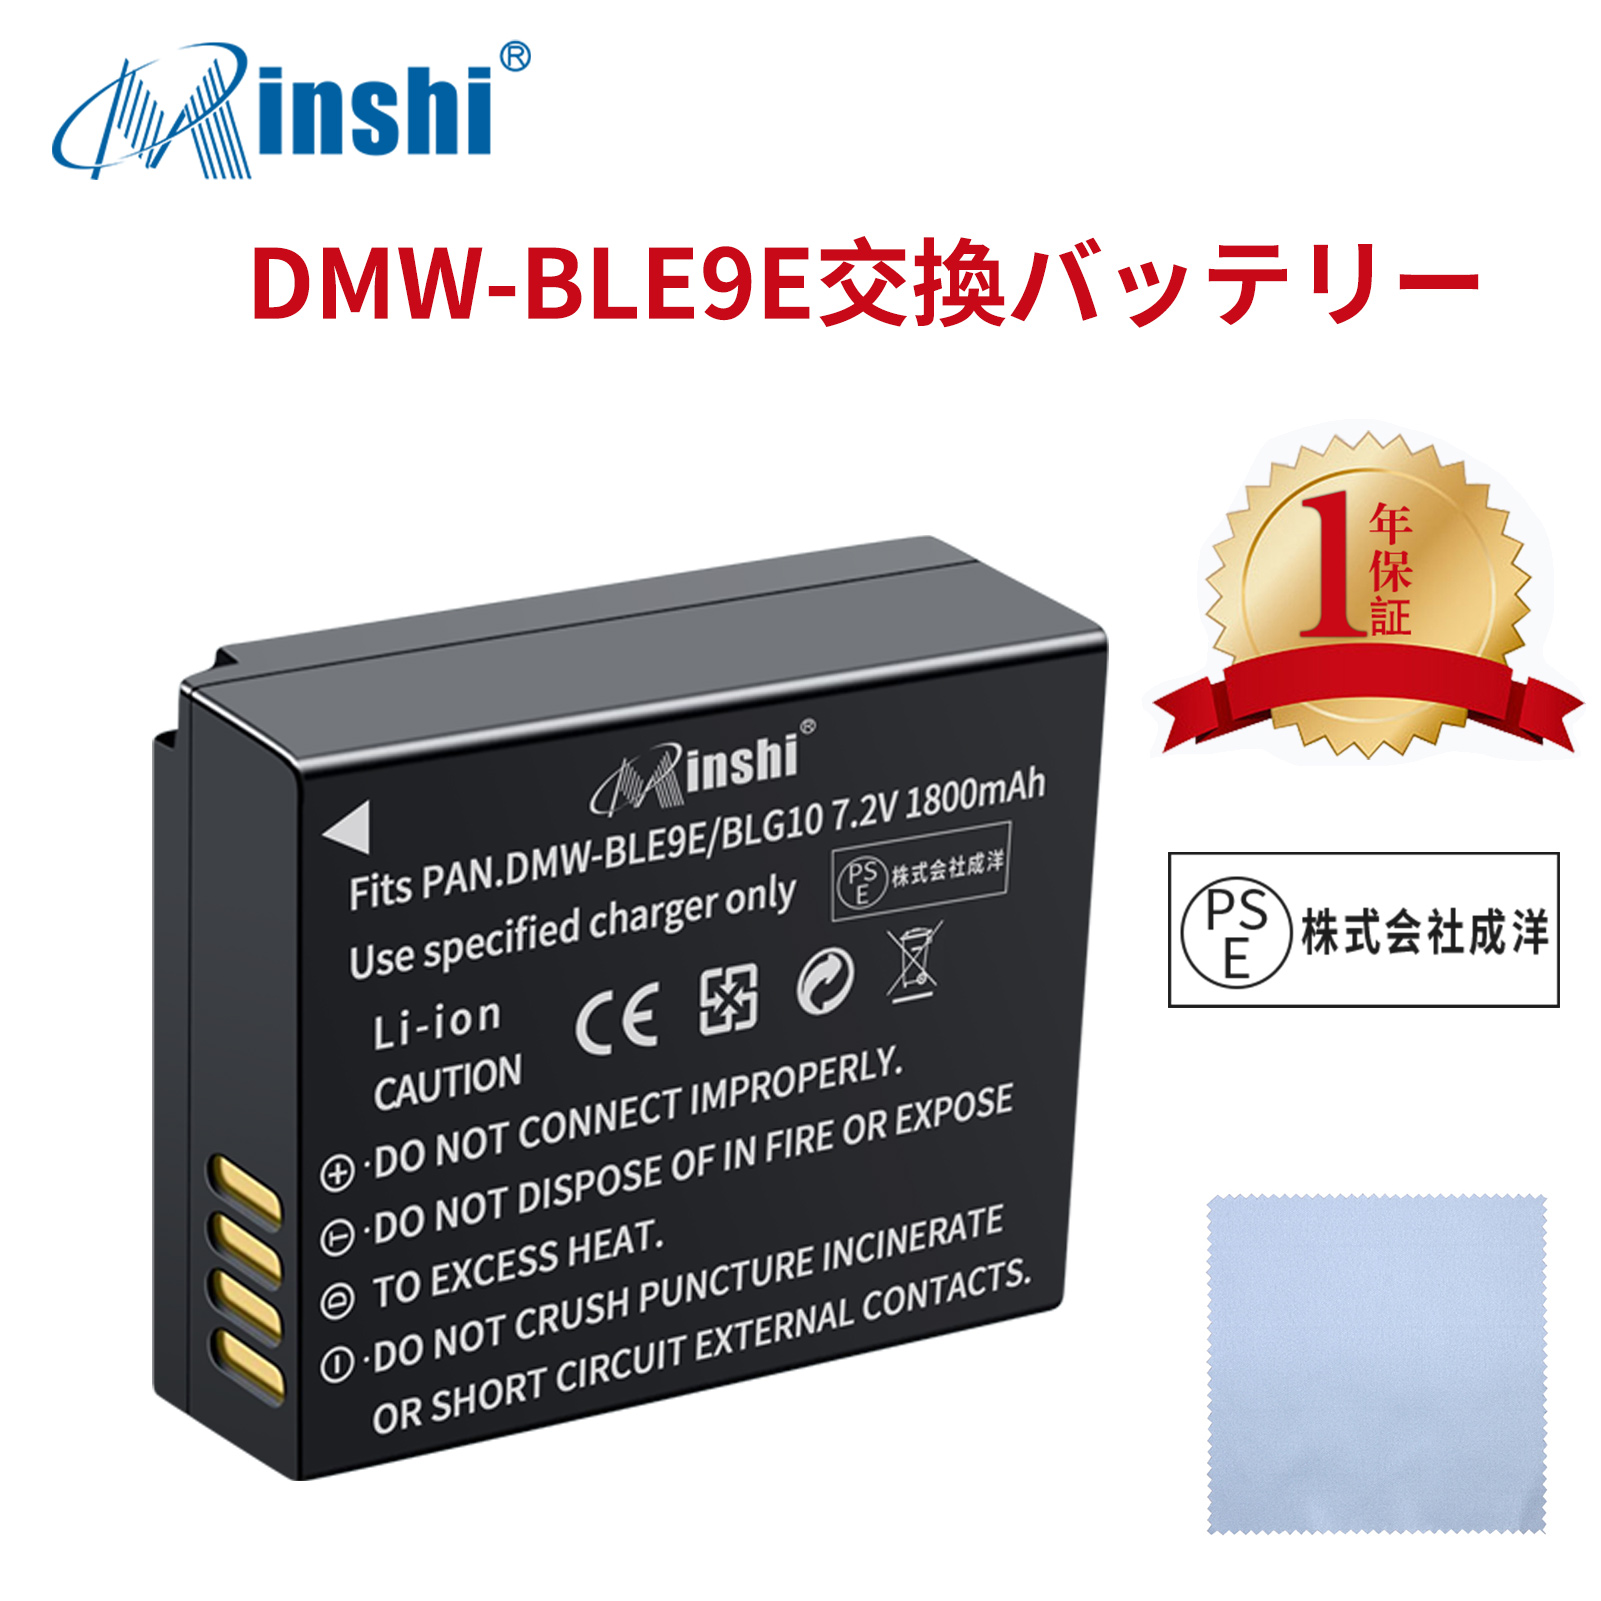 【清潔布ー付】minshi Panasonic DMW-BLE9  【1800mAh 7.2V】PSE認定済 高品質 DMW-BLG10 交換用バッテリー